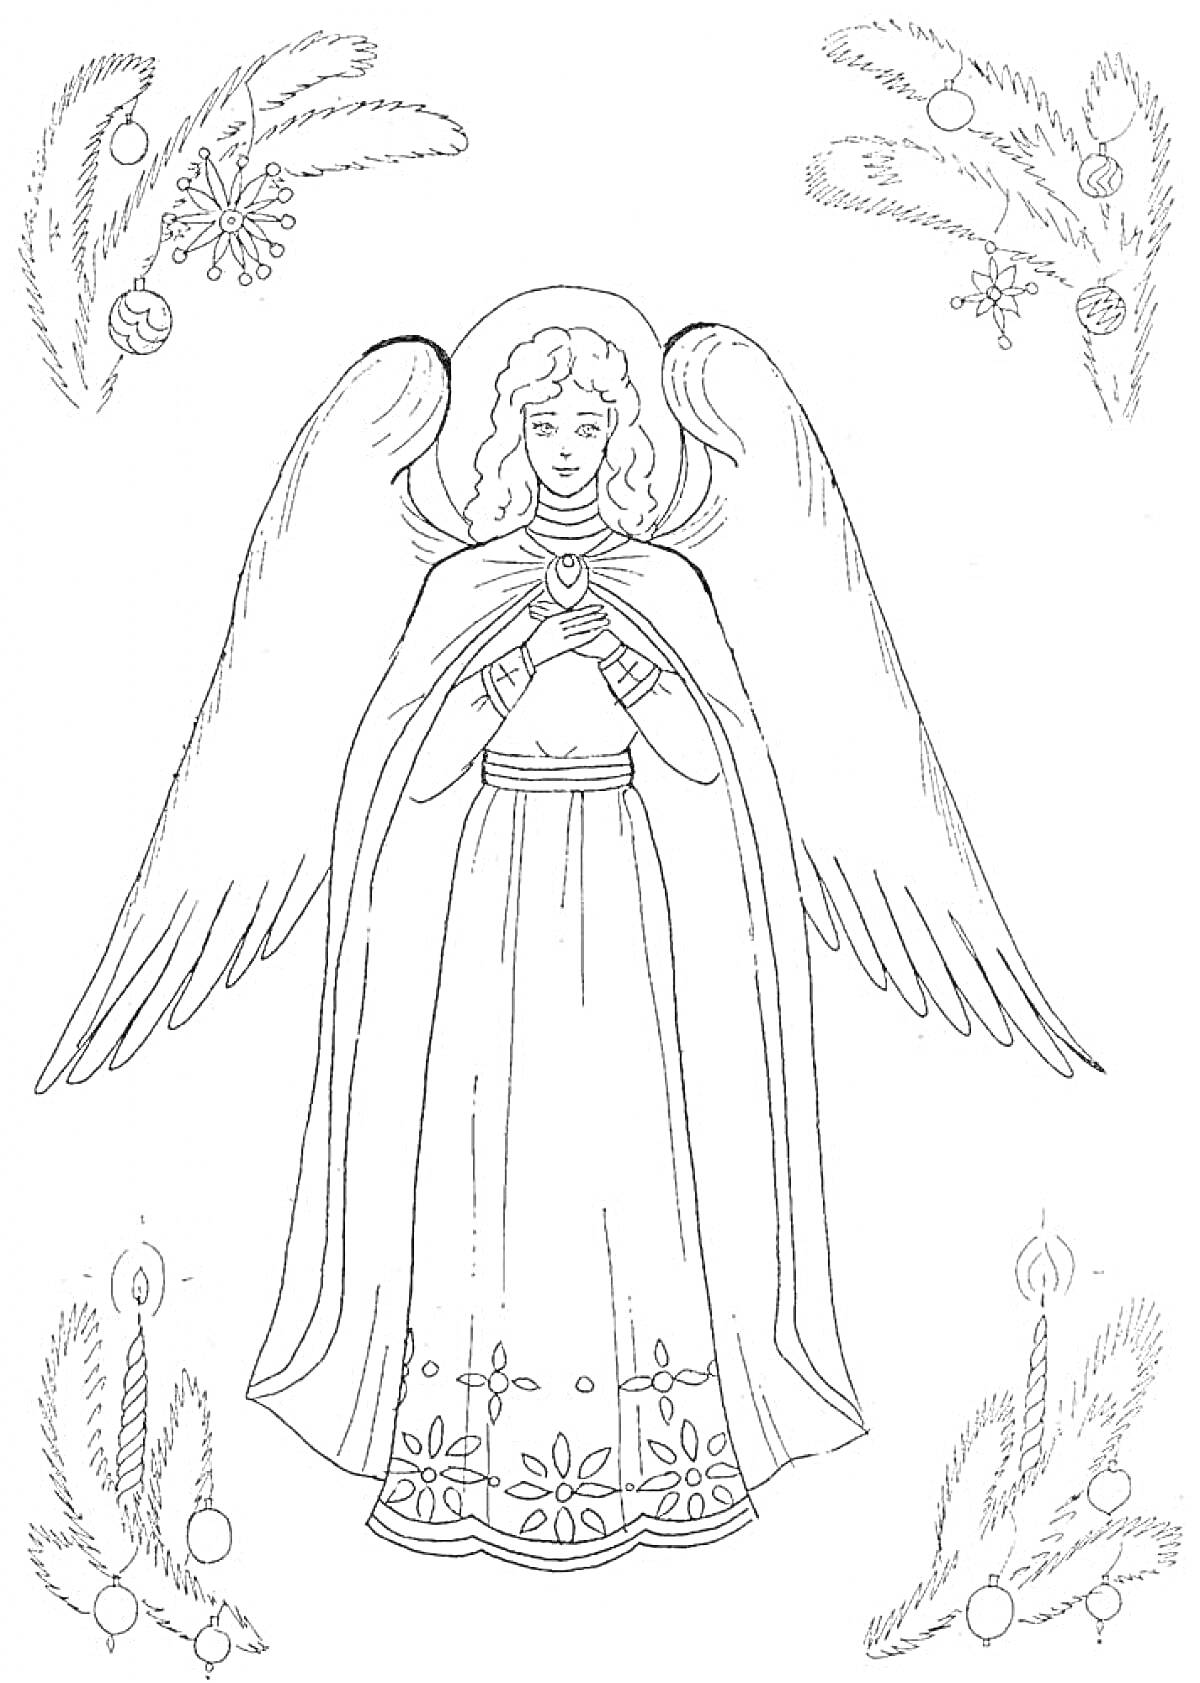 Раскраска Рождественский ангел с простертыми крыльями, в длинном платье, украшенном снежинками и цветами. В углах - новогодние елочные украшения и ветви.